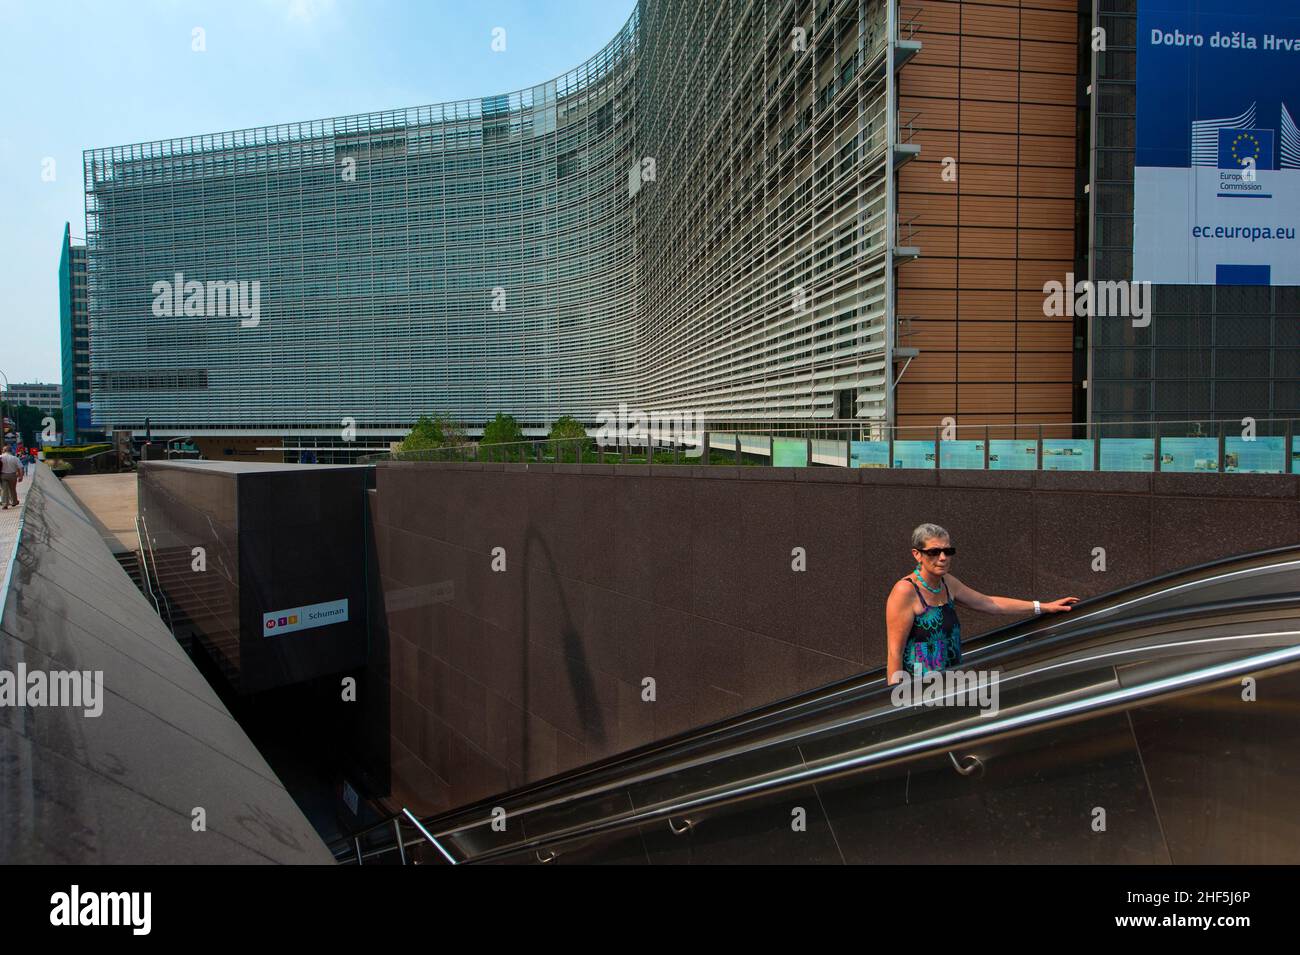 Brüssel, Belgien. Das Berlaymont-Gebäude (auch bekannt als BERL) in der Wetstraat, von der aus die Europäische Kommission den größten Teil der Europäischen Union verwaltet. Stockfoto